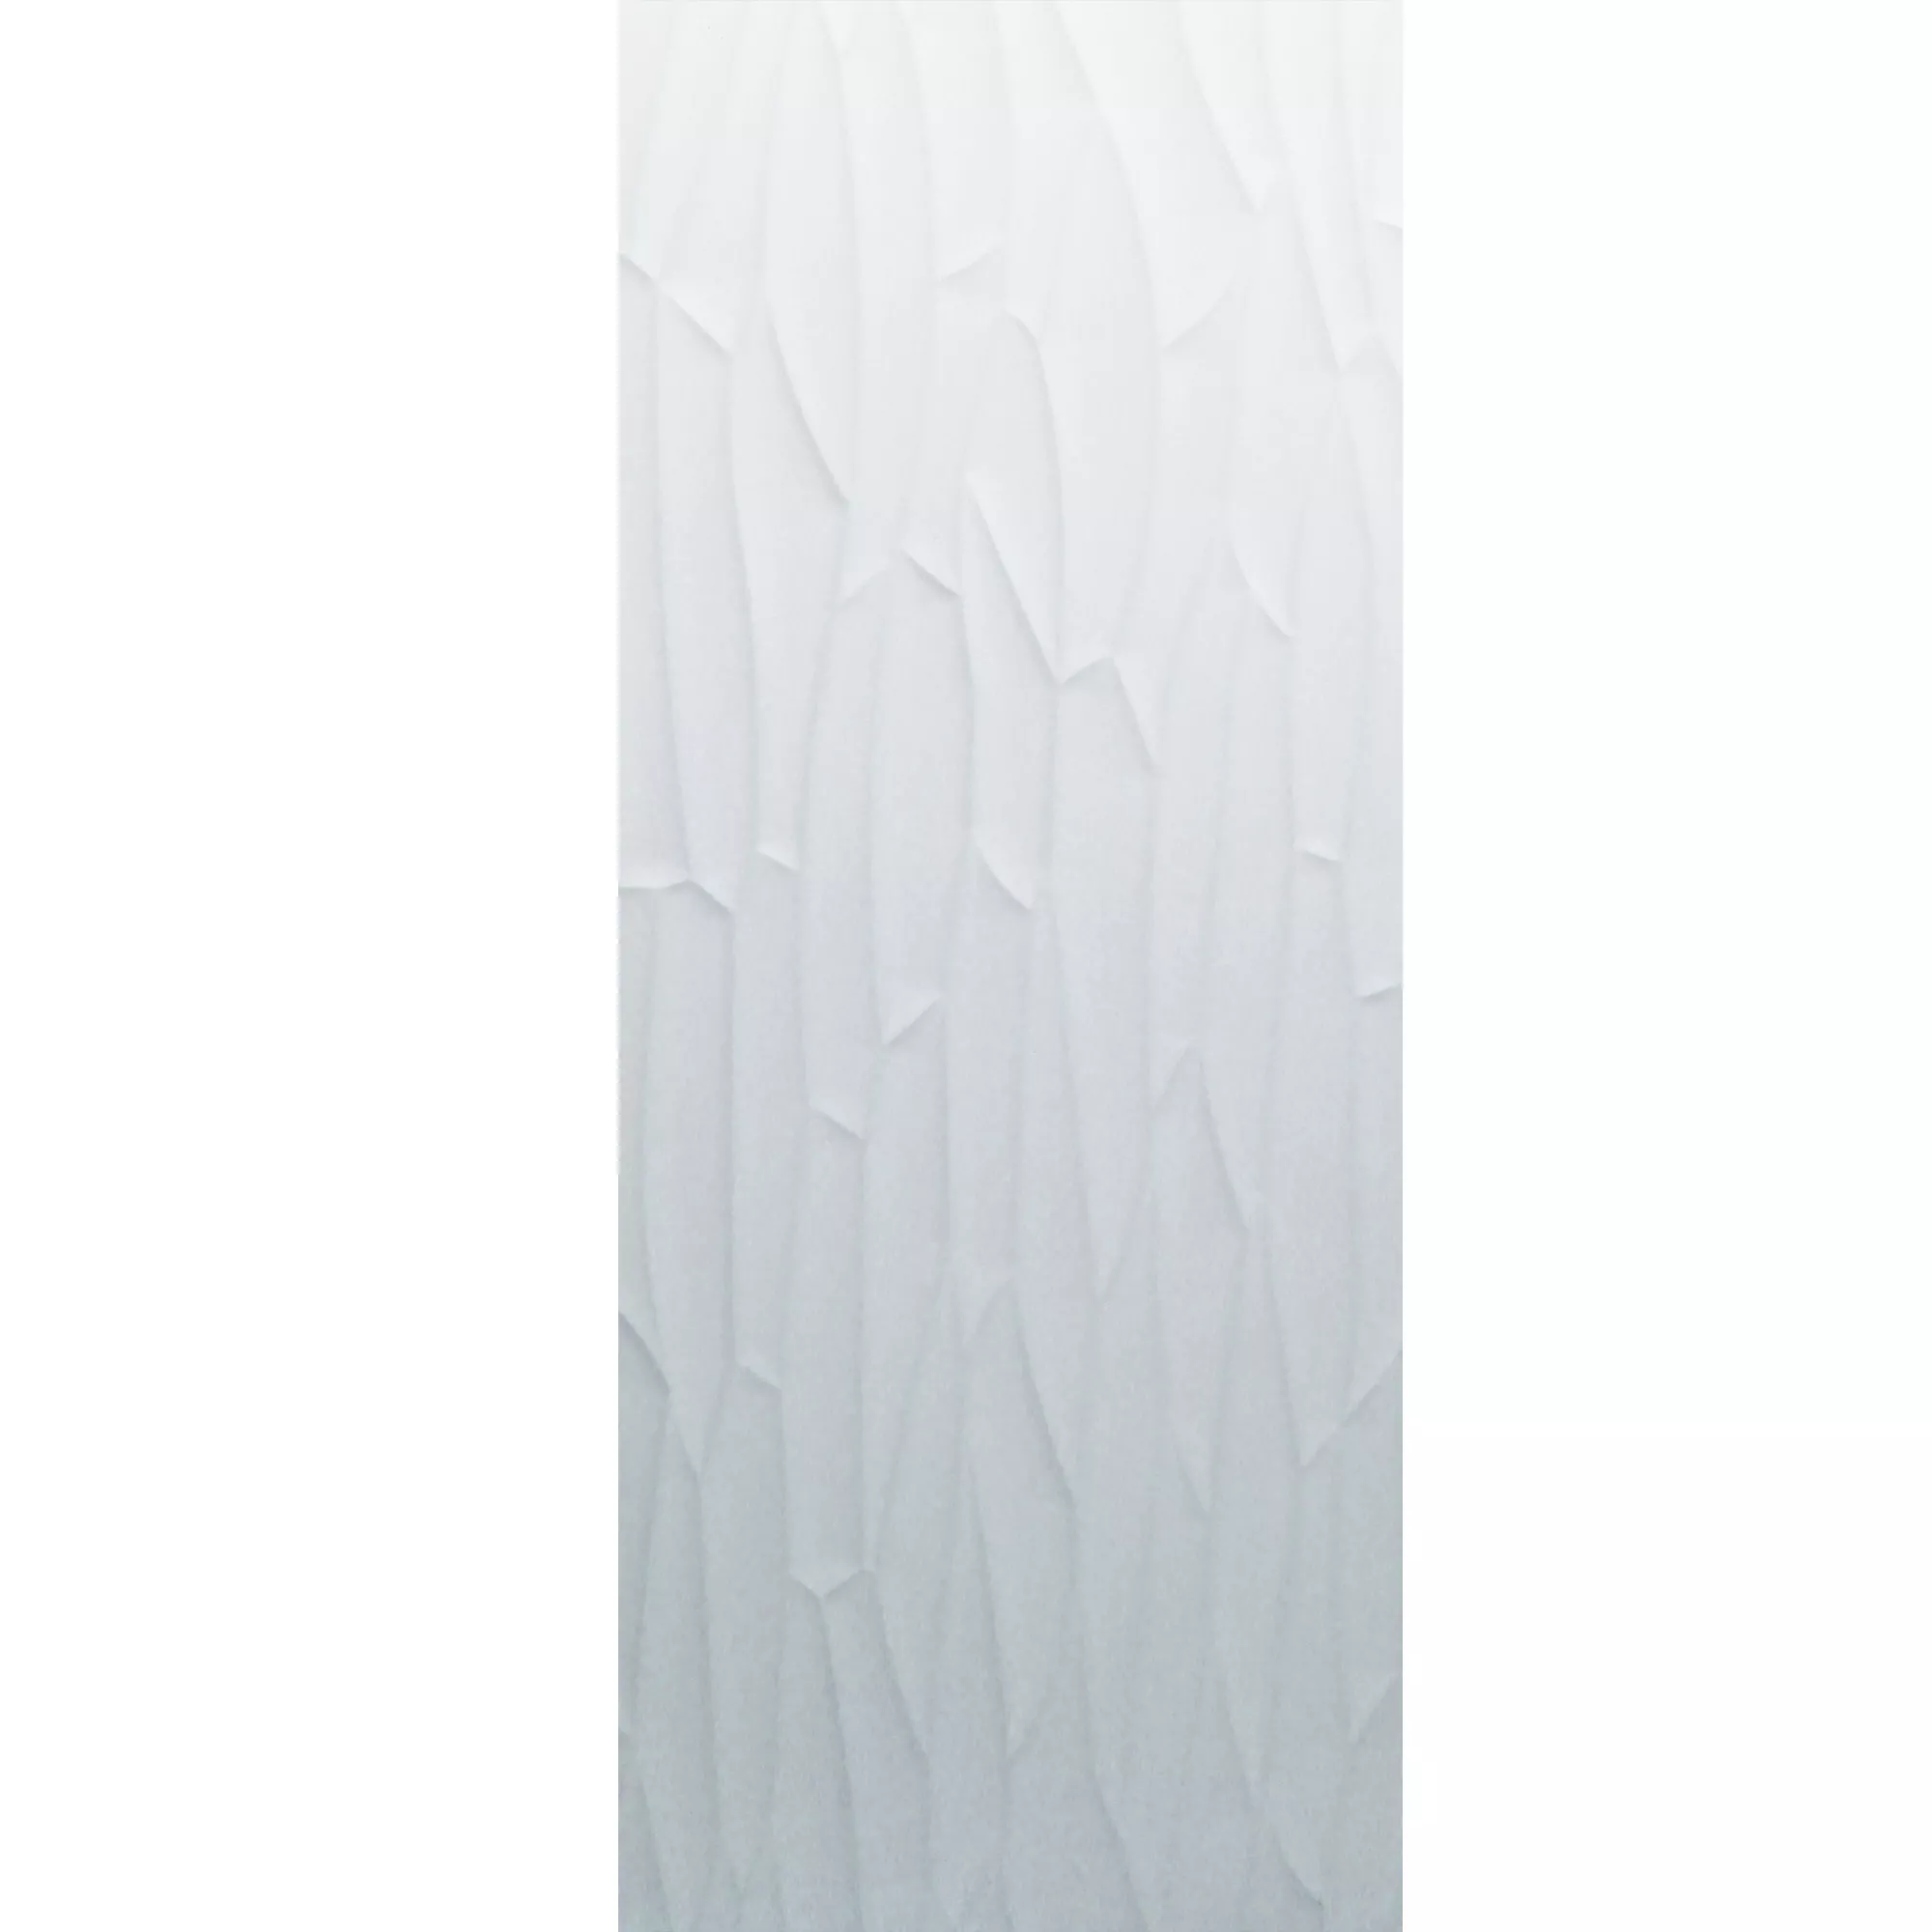 Azulejos Schönberg Retificado Branco Fosco 40x120cm Decoração